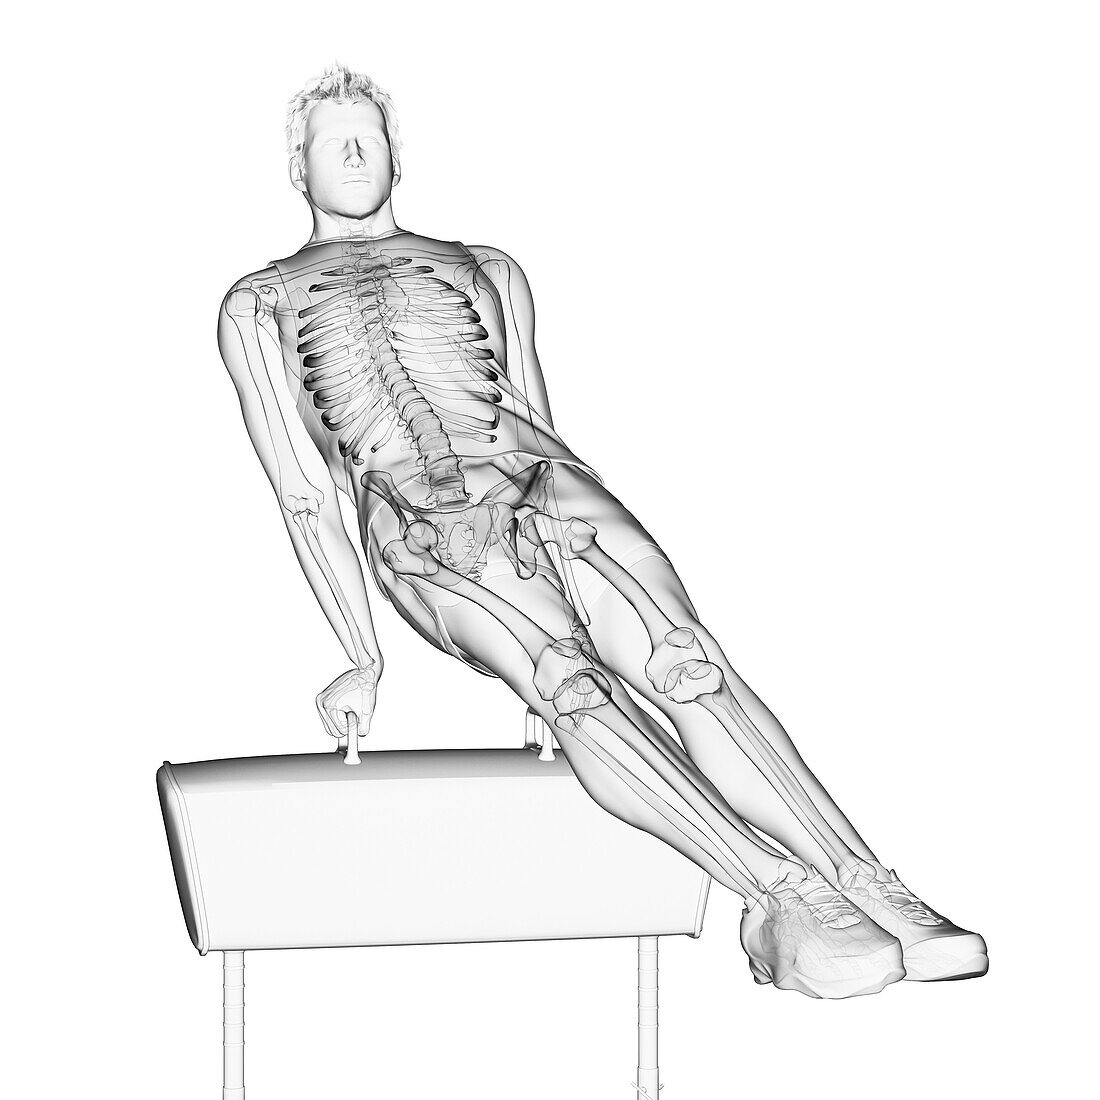 Skeleton of a gymnast, illustration